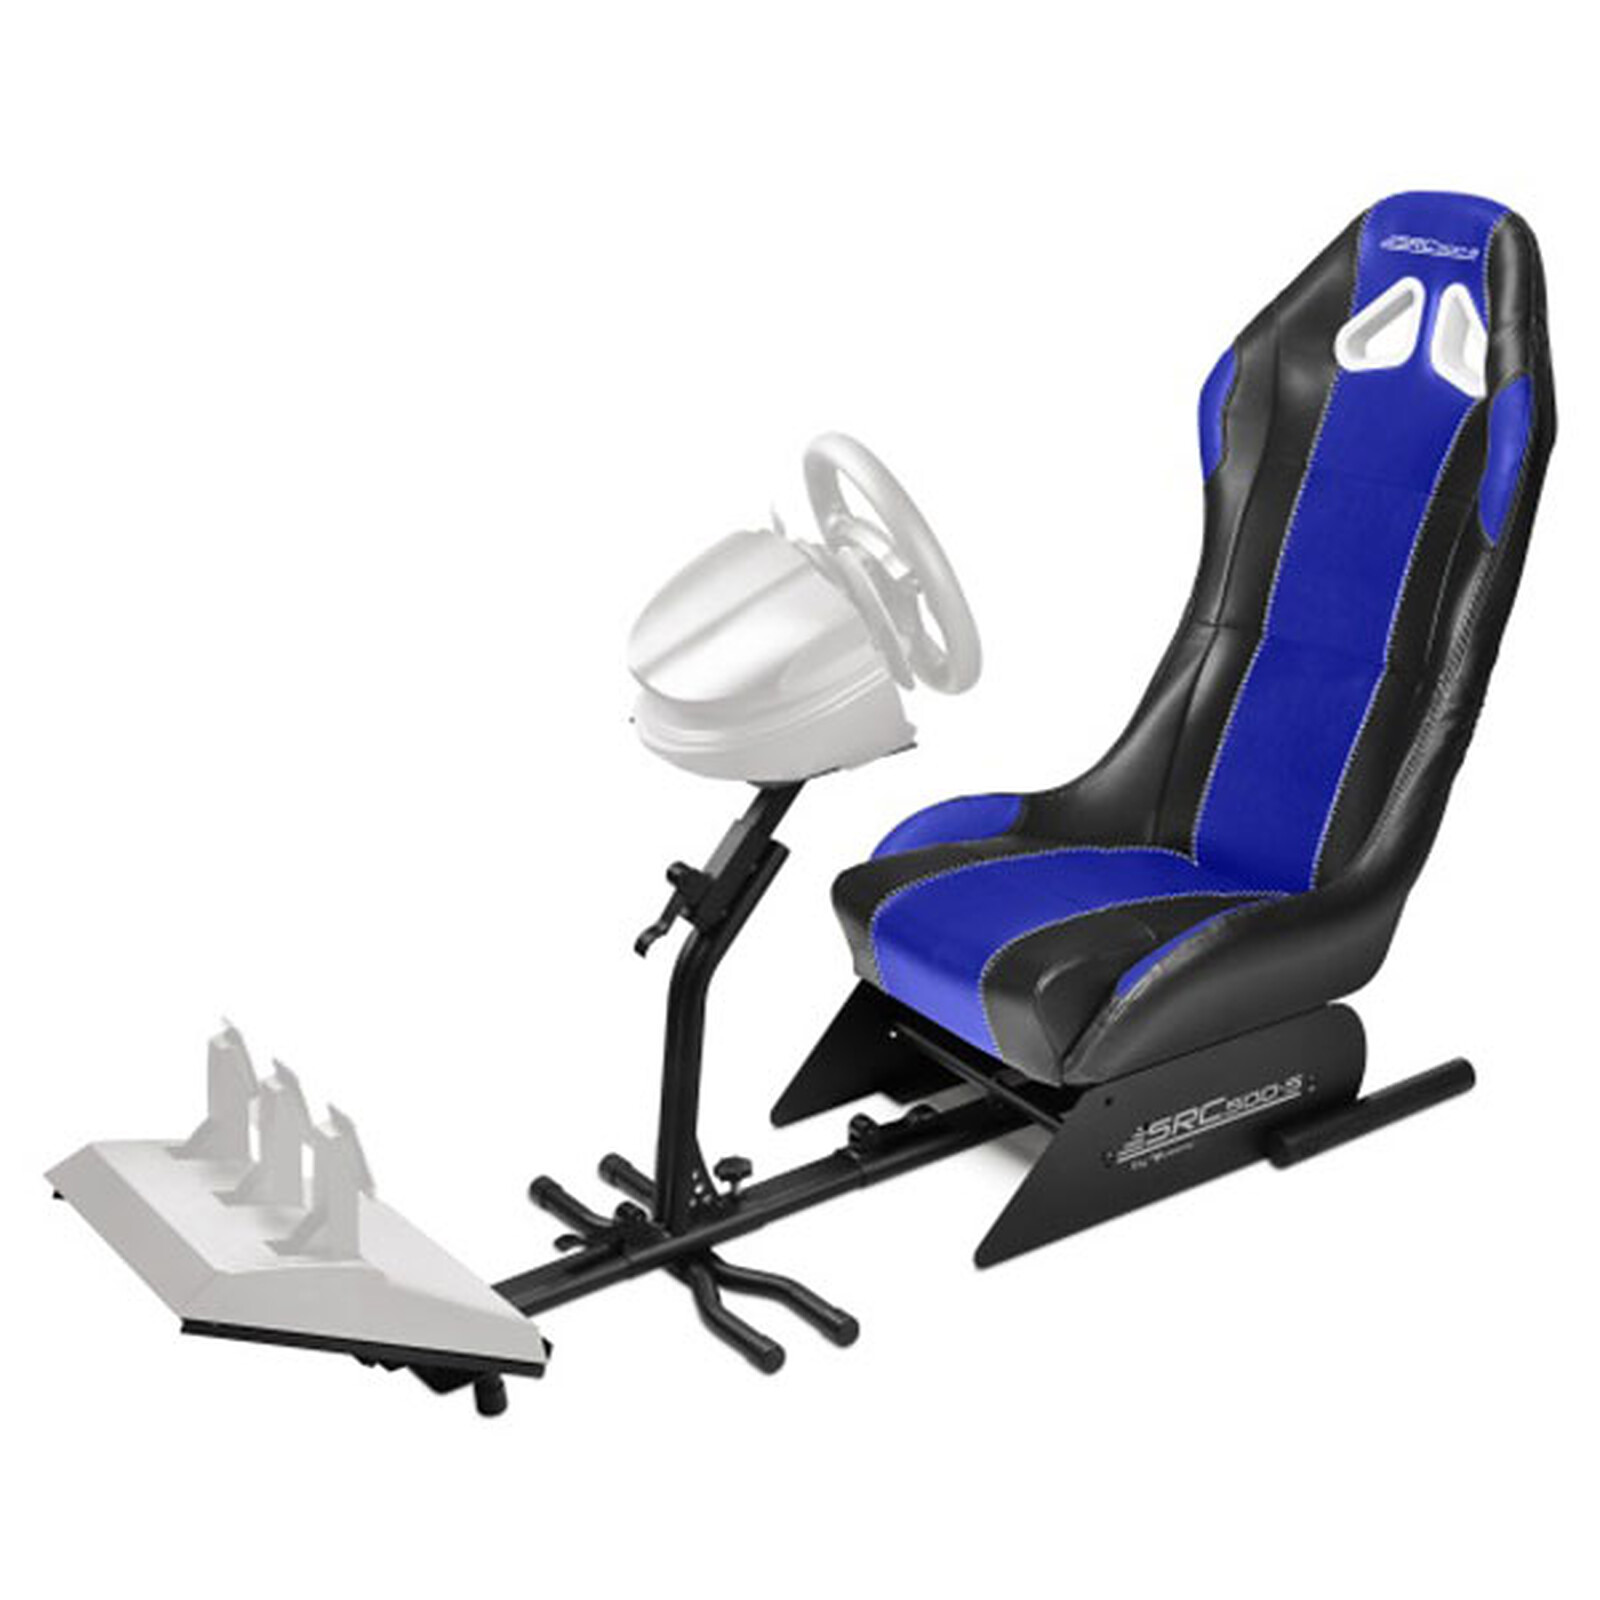 Subsonic - Siege cockpit de simulation pour volant gaming - Fauteuil gamer  - LDLC